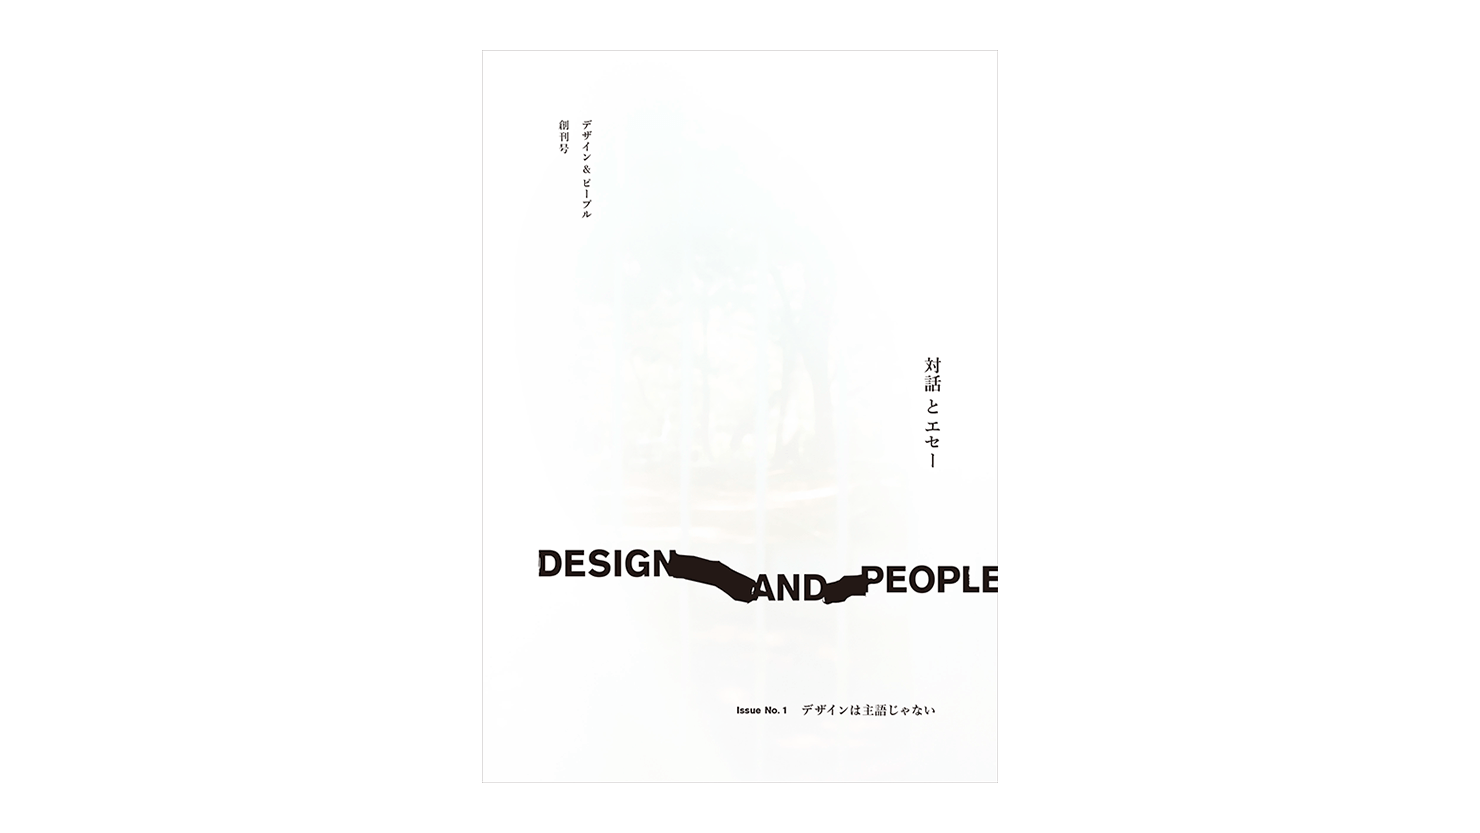 コンセント刊『DESIGN AND PEOPLE｜Issue No.1 デザインは主語じゃない』の表紙画像。